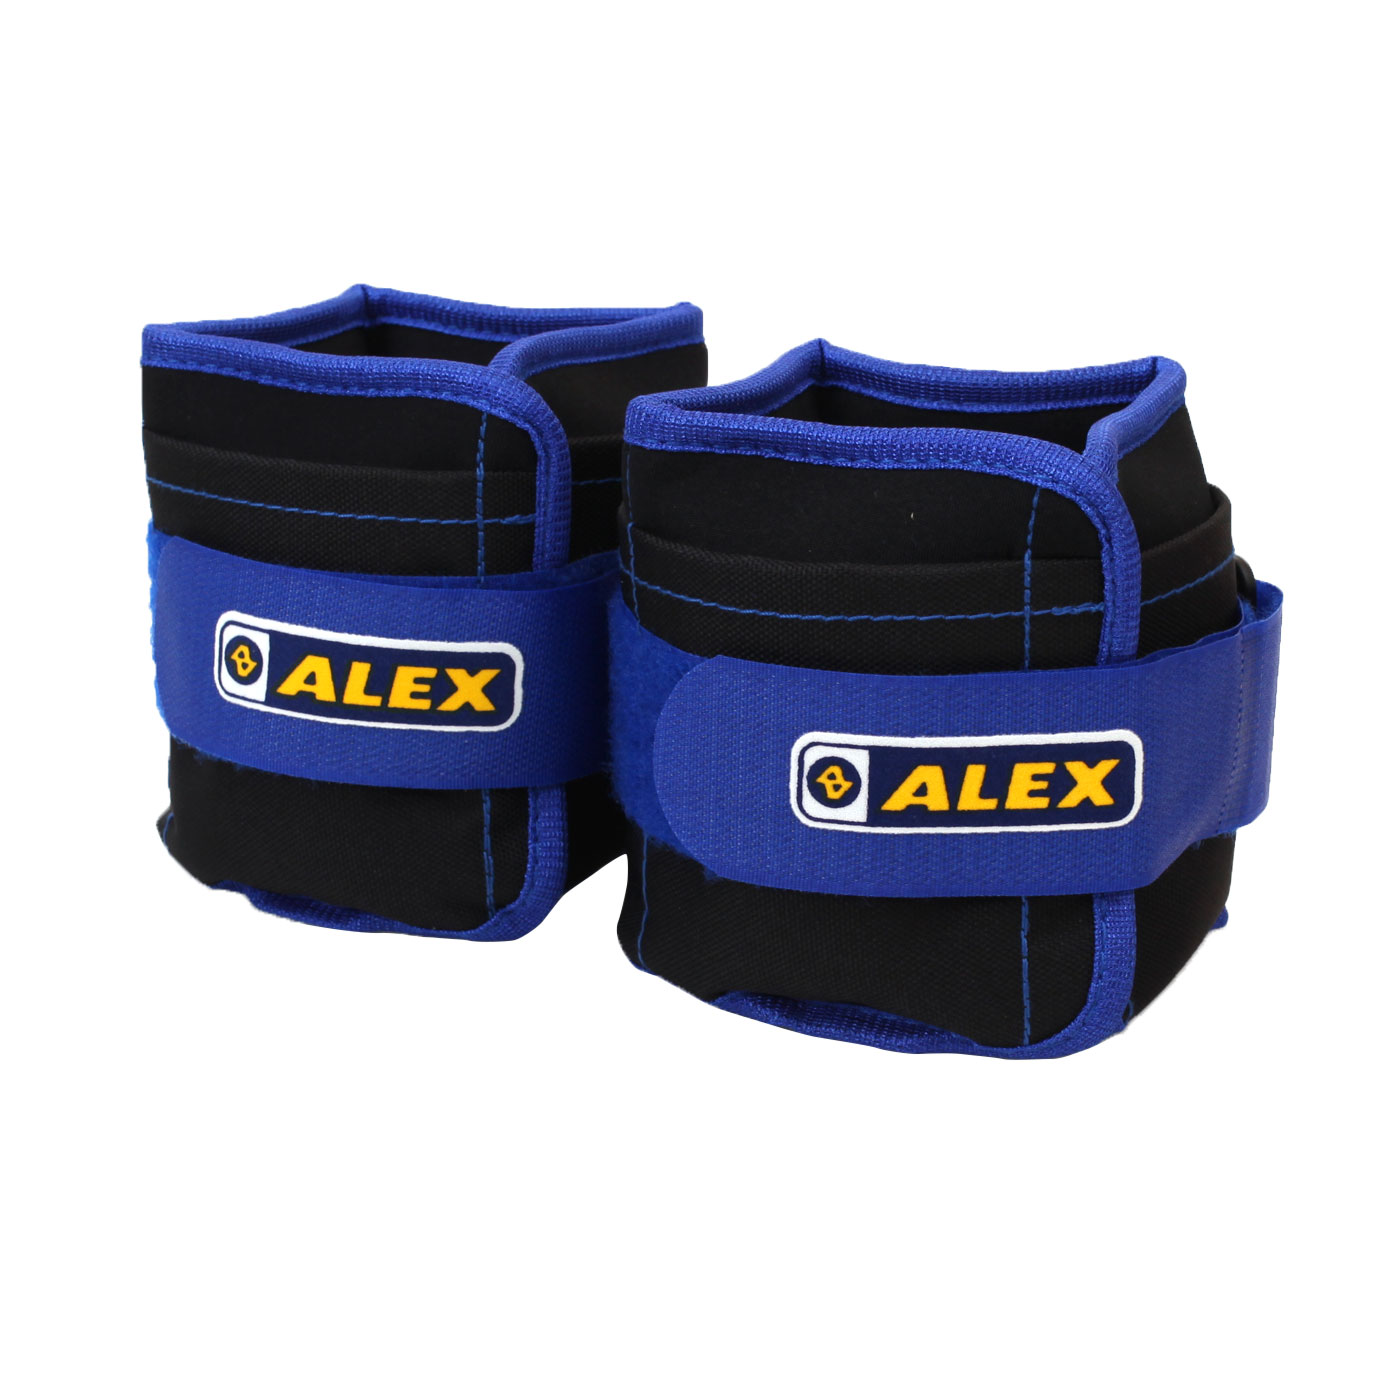 ≡排汗專家≡【C-4903】ALEX 3kg 沙包型加重器(台灣製 健身器材 重量訓練 肌力訓練 可拆式